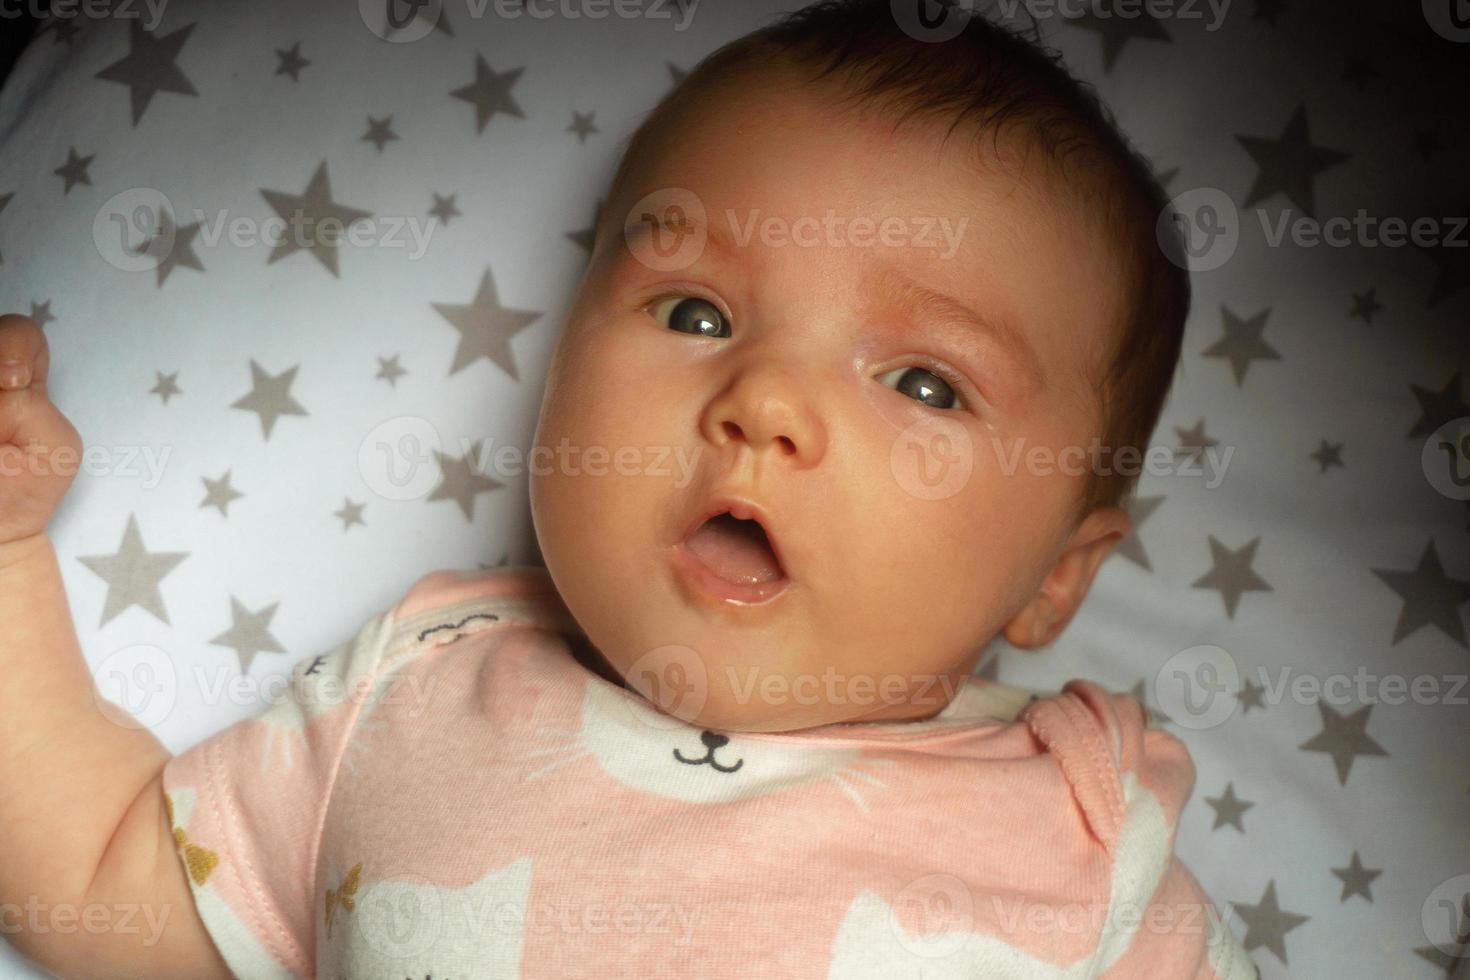 detailopname portret van een mooi weinig baby meisje foto